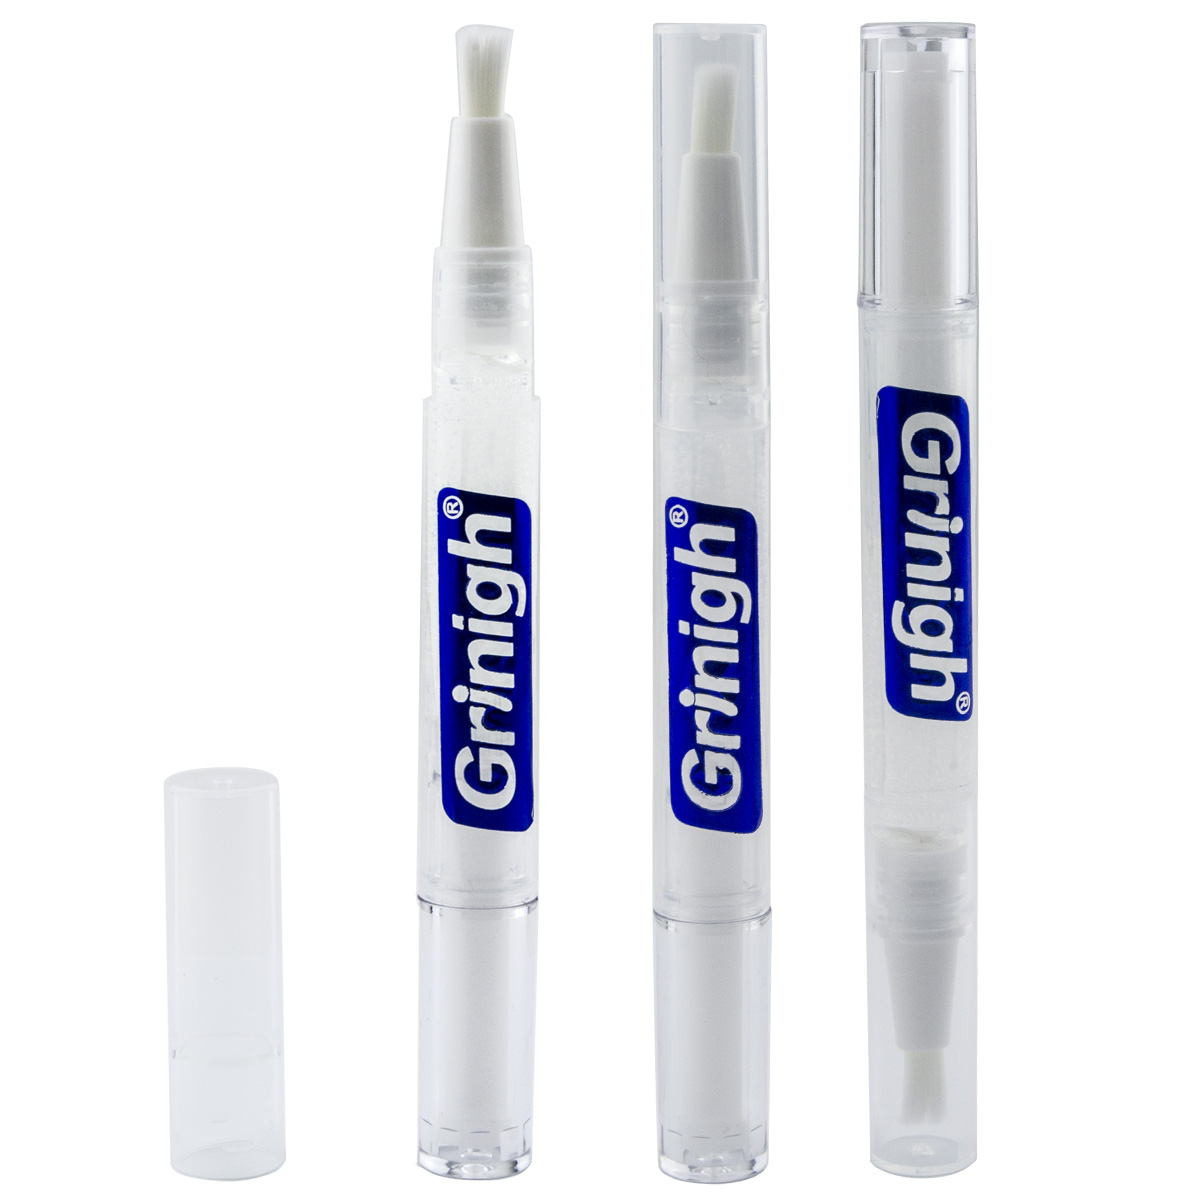 Grin365 Precise White Teeth Whitening Applicator Pen med naturlige ingredienser - 3 Telle - Konsentrert styrke gel (6% Hydrogenperoksid)